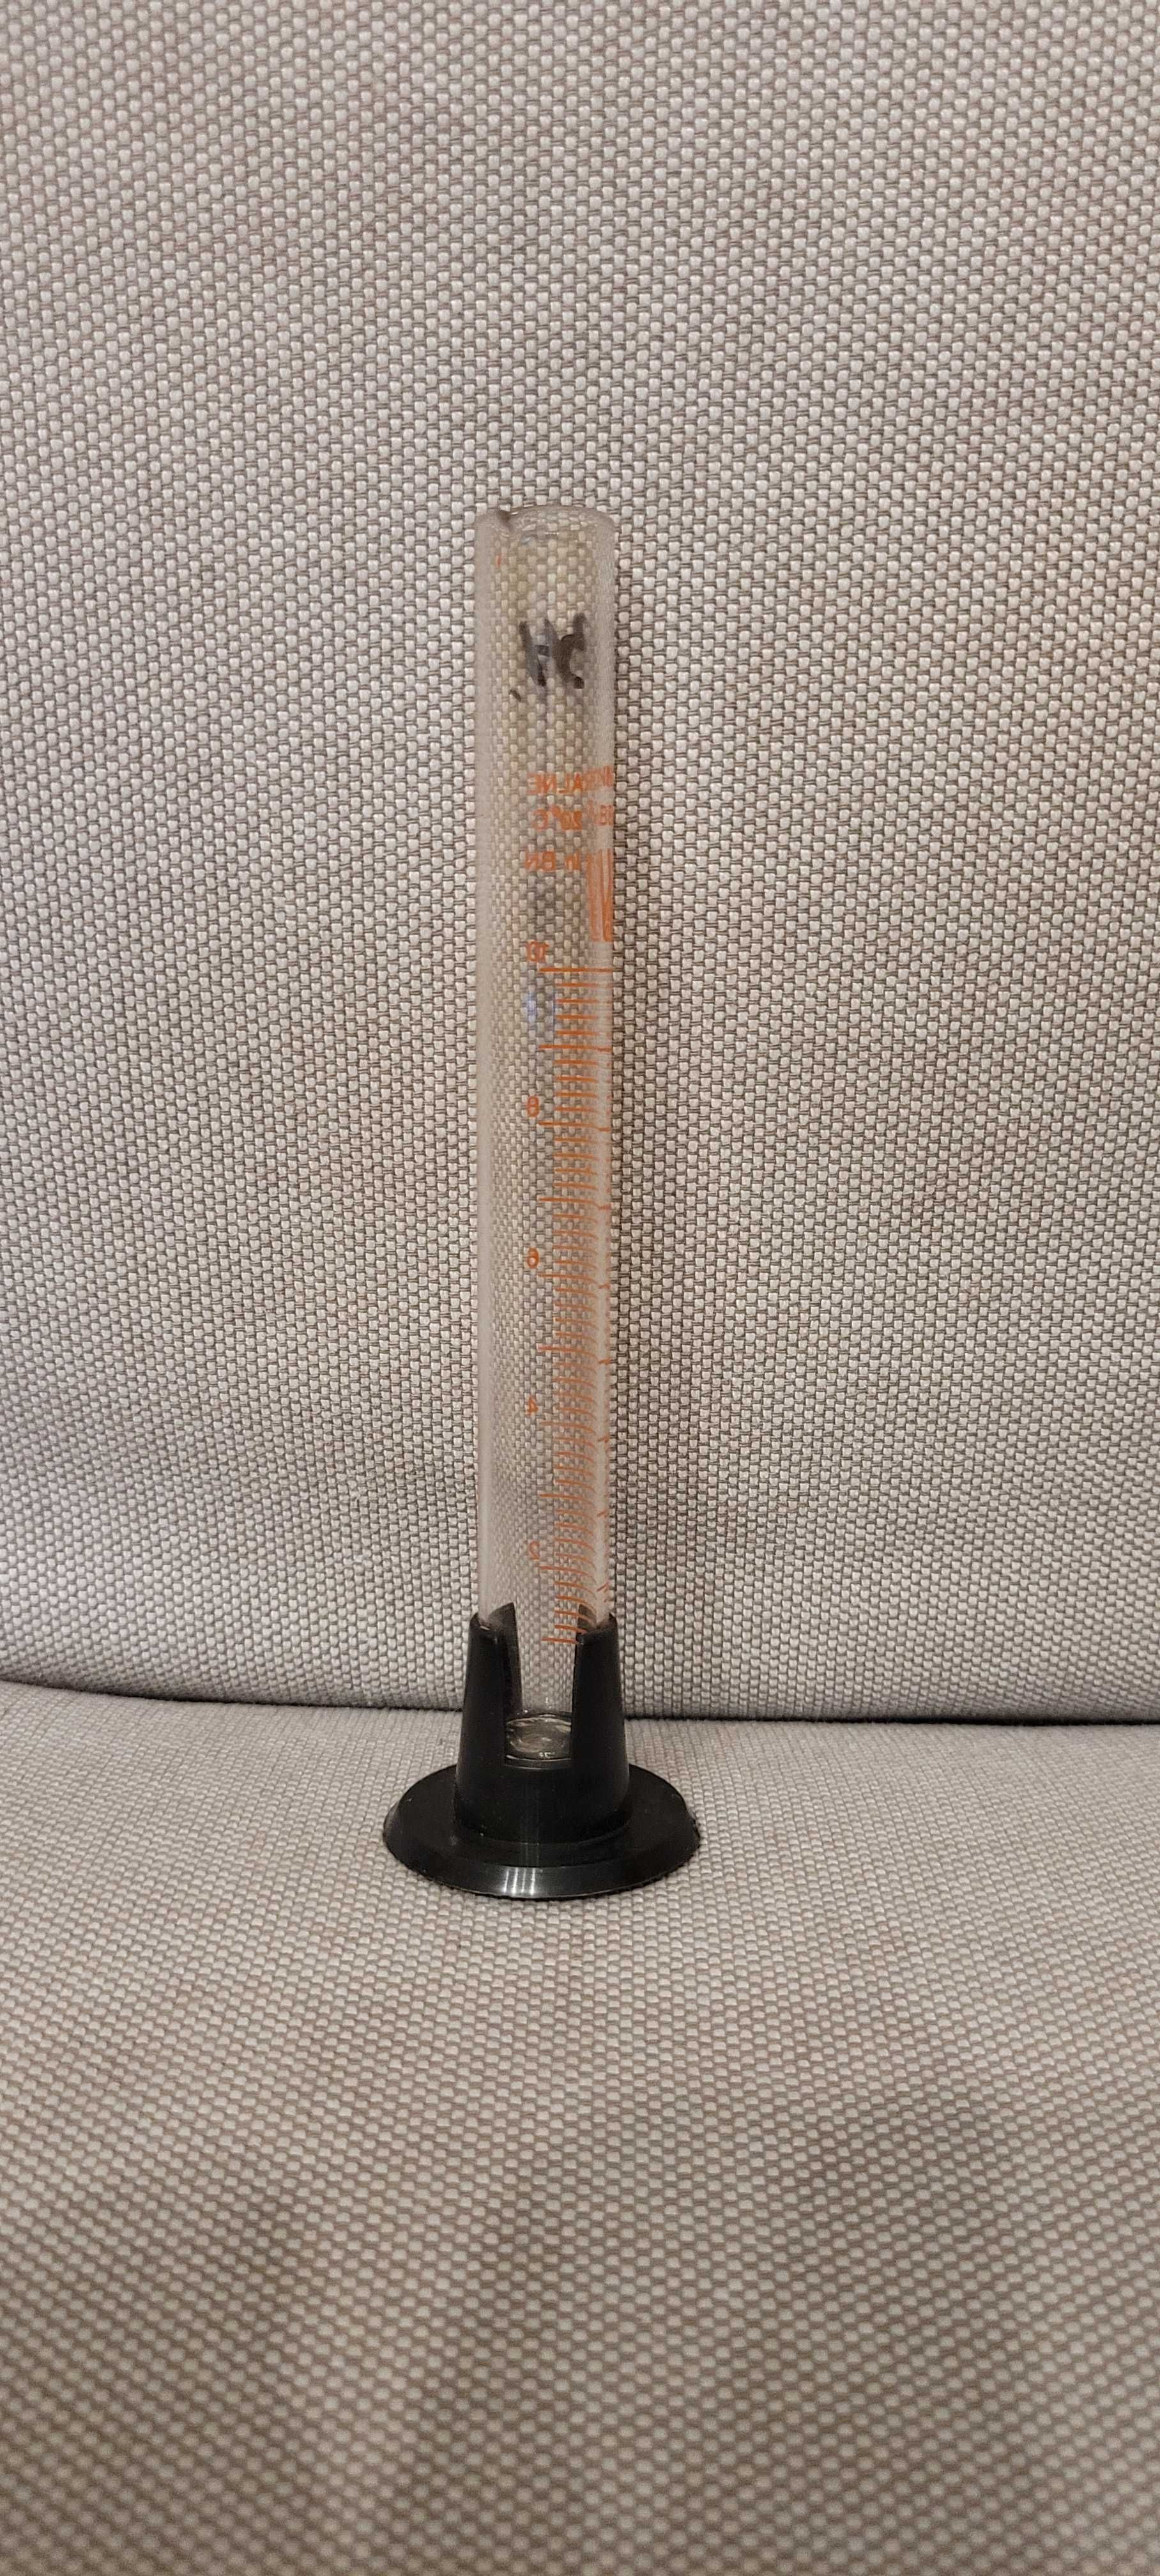 Cylinder miarowy nr 34, pojemność 10 ml / szkło laboratoryjne